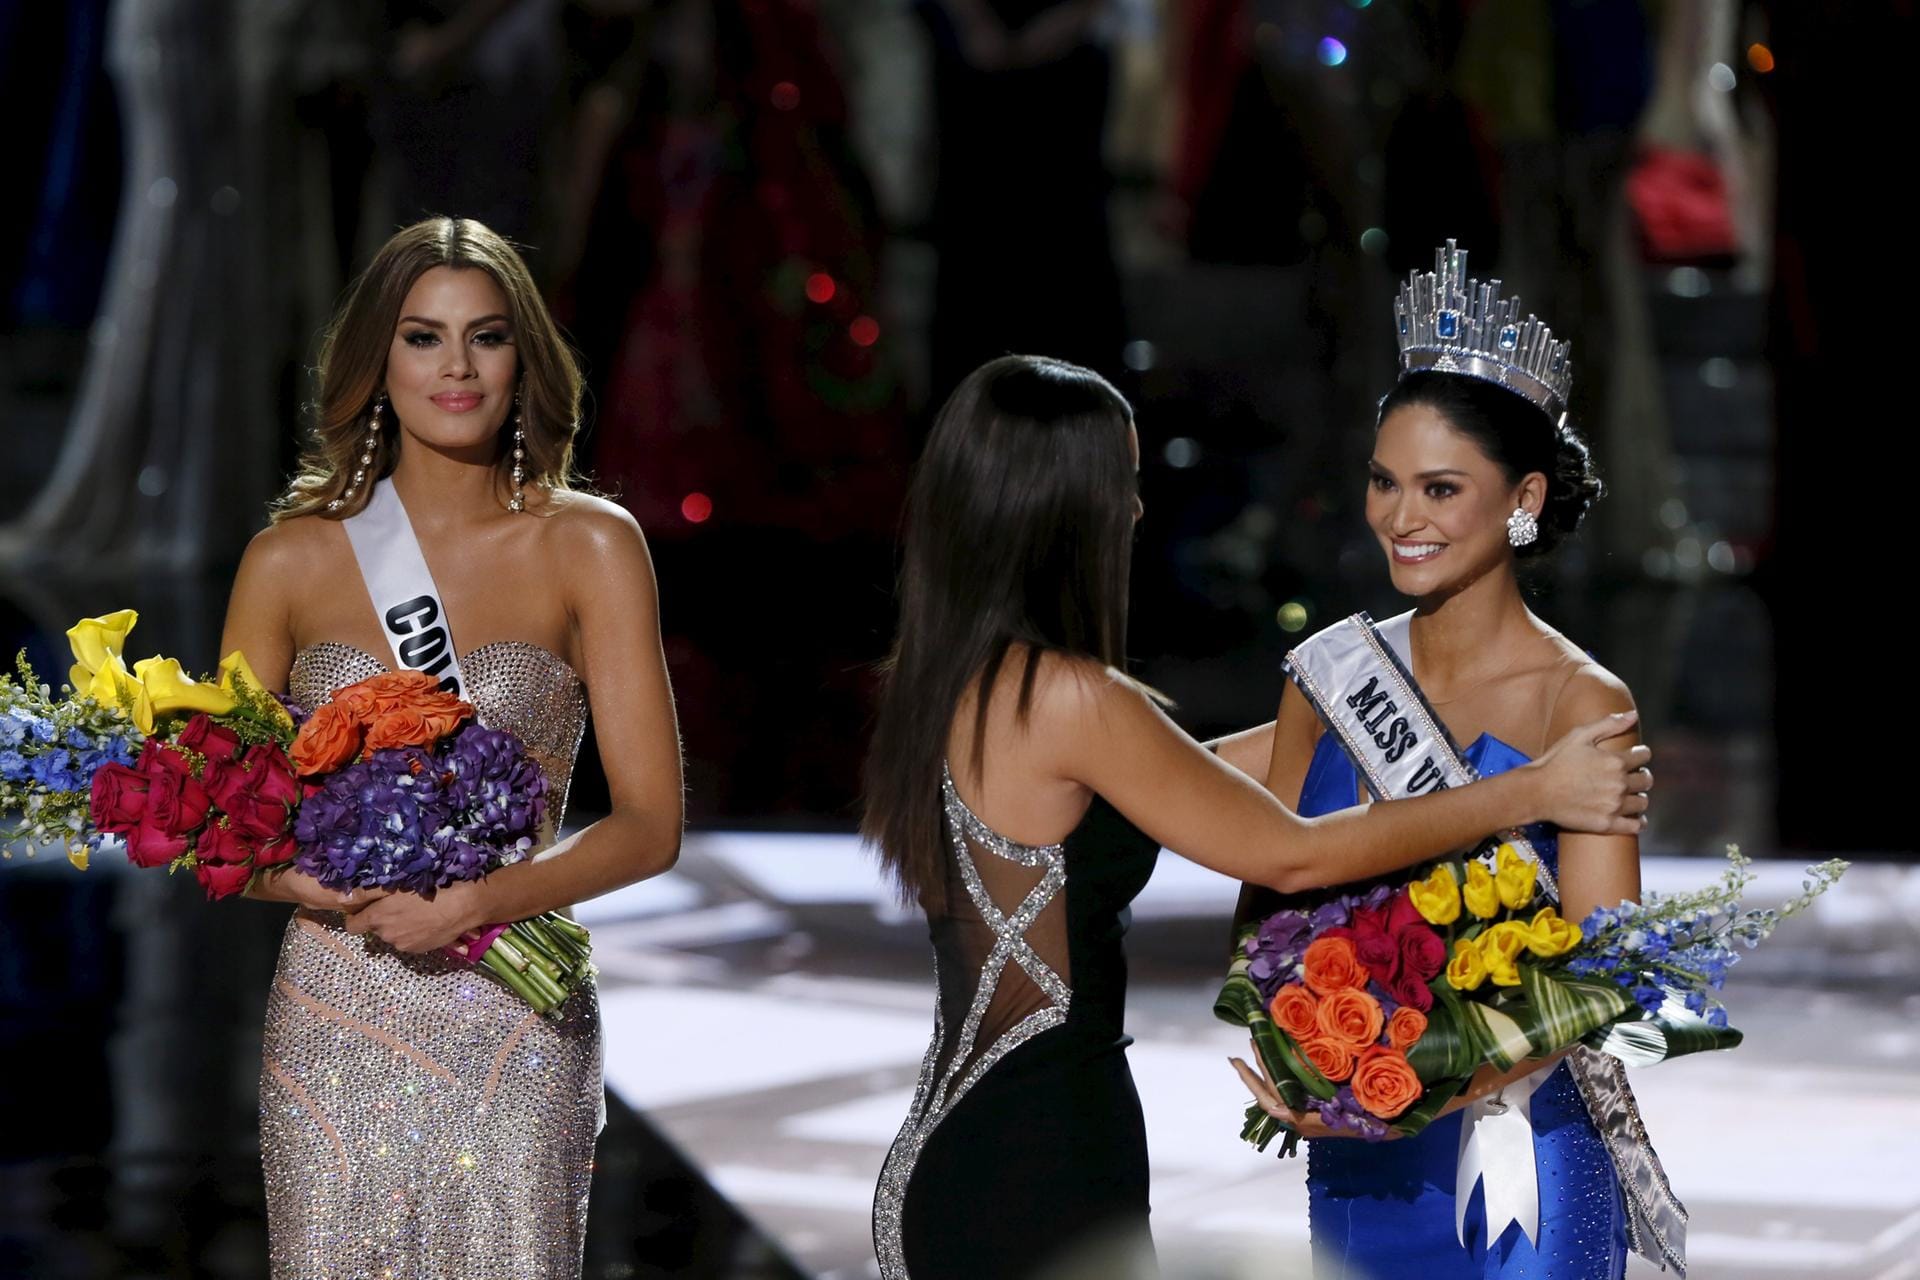 So hat alles seine Richtigkeit. Pia Alonzo Wurtzbach ist die richtige Miss Universe, Ariadna Gutierrez Arevalo wurde in de Platzierung zurückgestuft. Tapfer probiert sie, weiterhin zu lächeln.